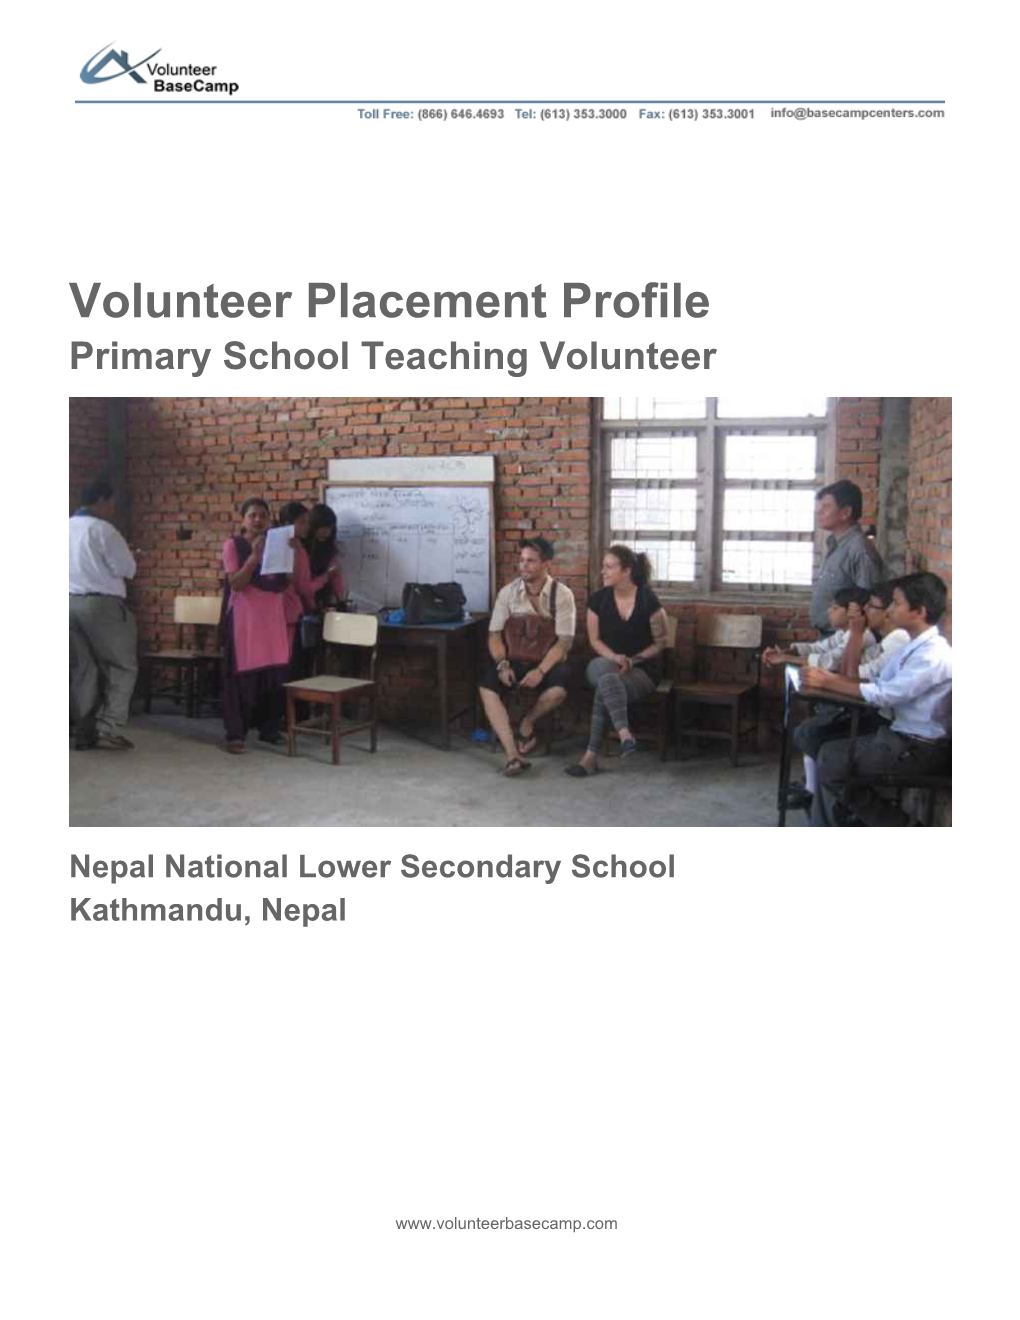 Volunteer Placement Profile Primary School Teaching Volunteer